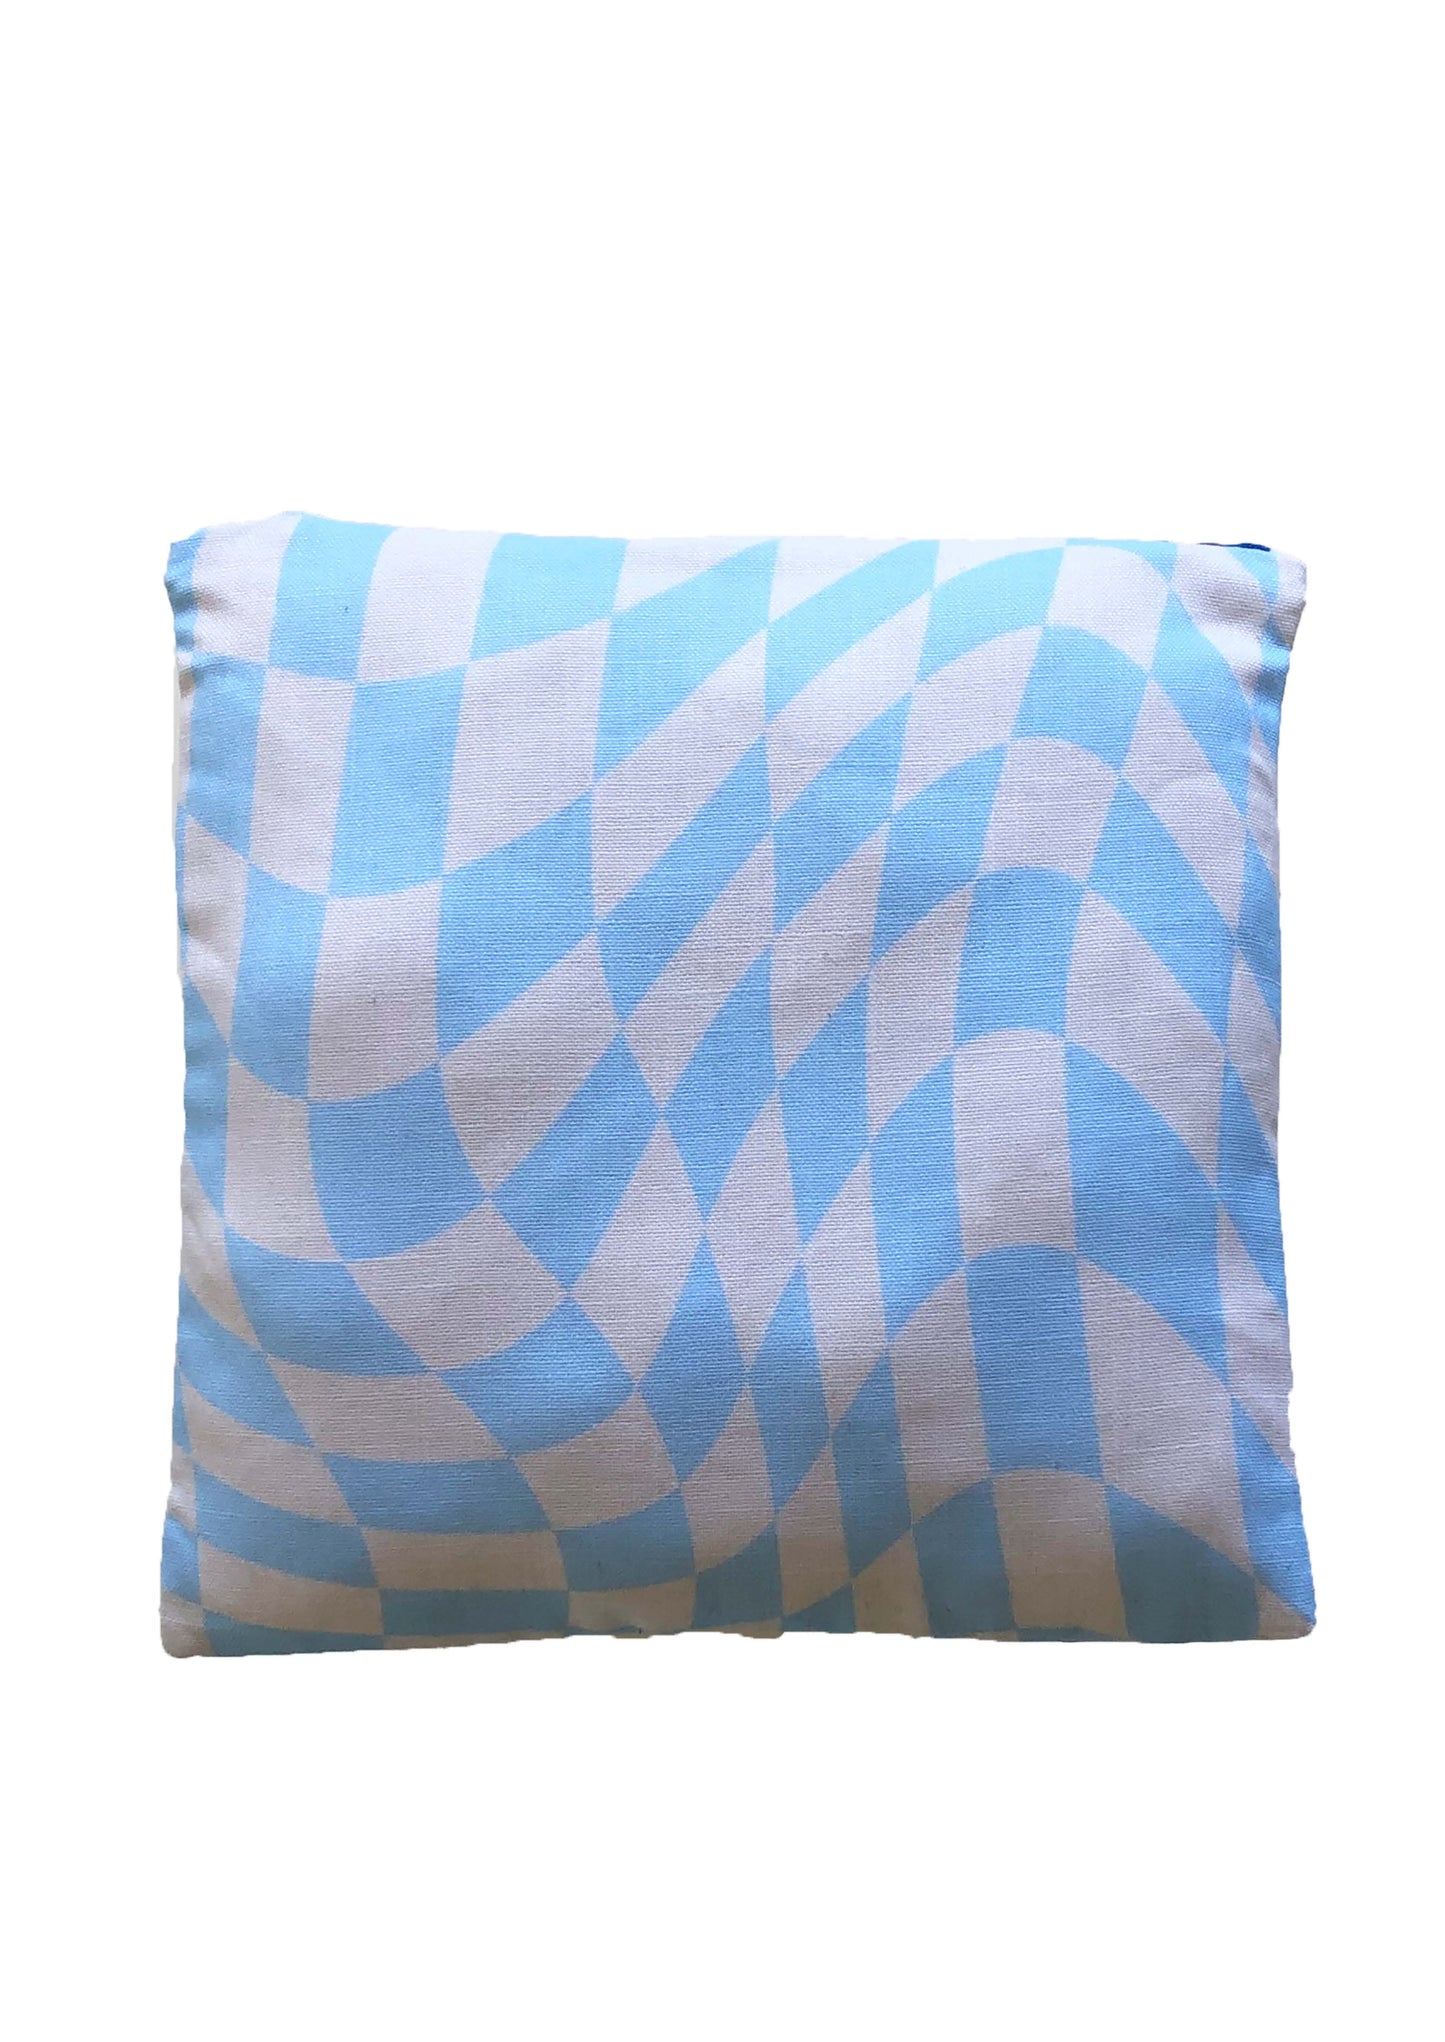 Groovy Blue Pillow